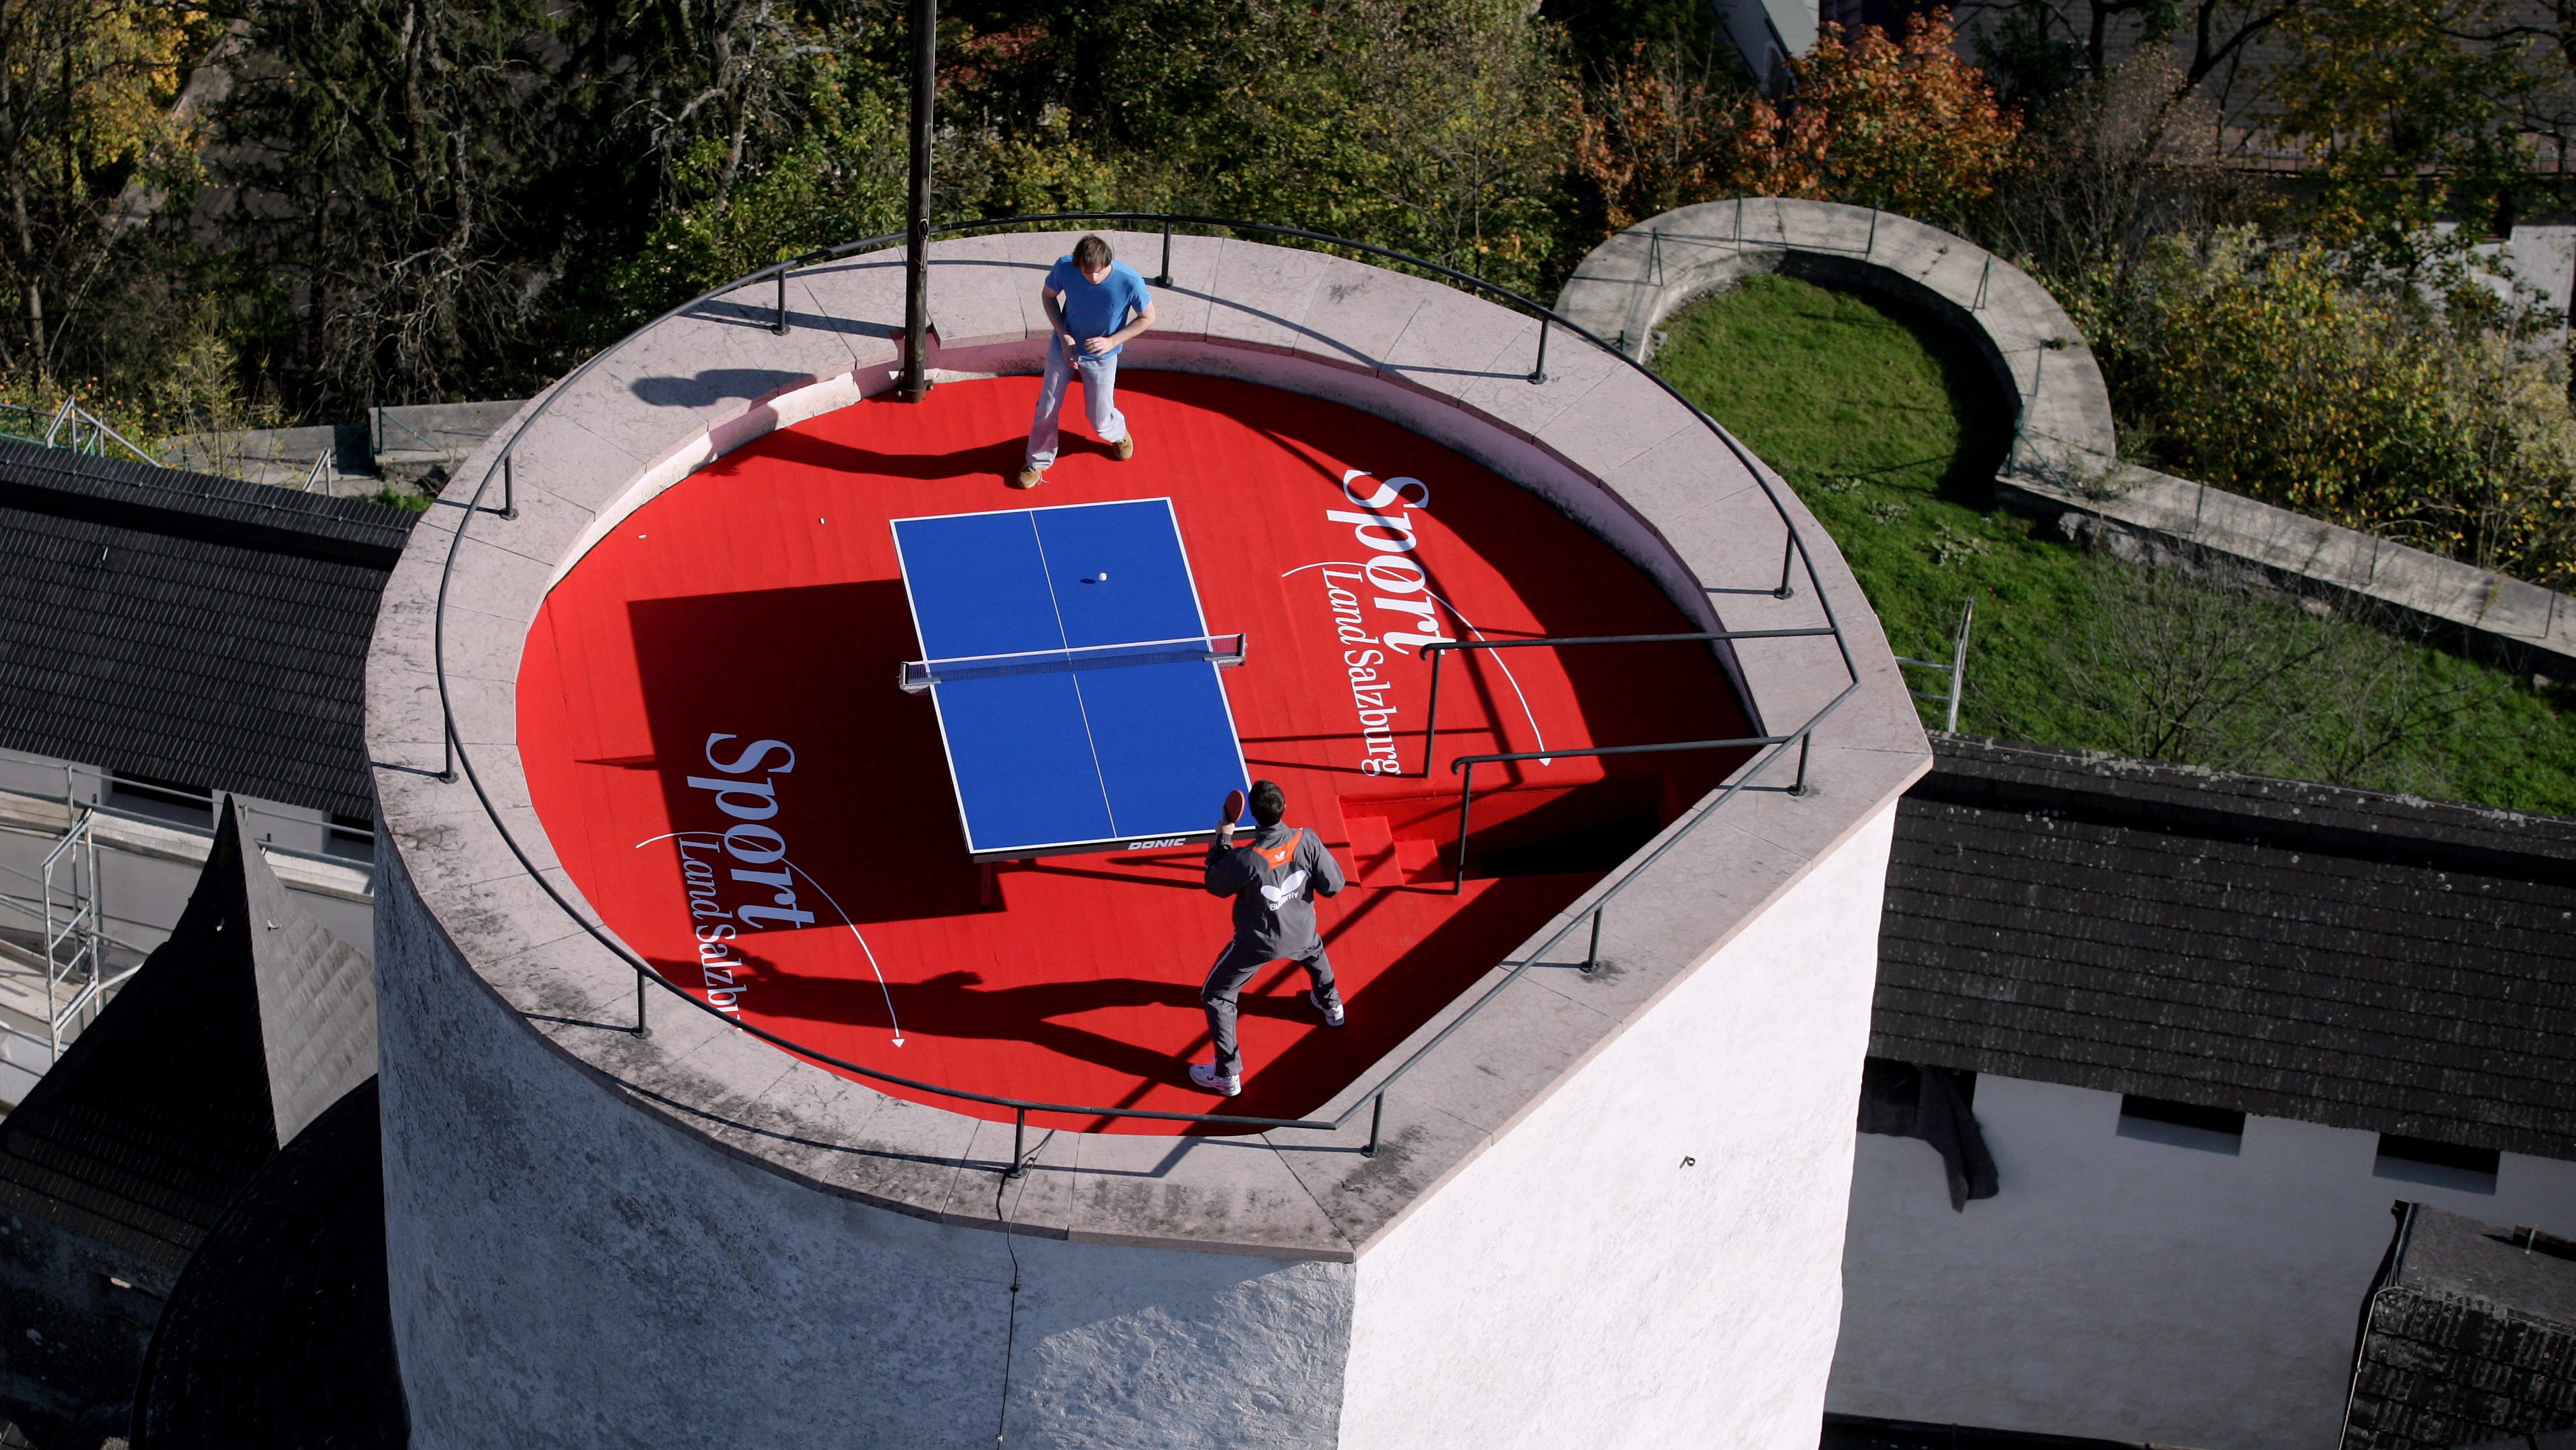 Tischtennis Turnier am Dach